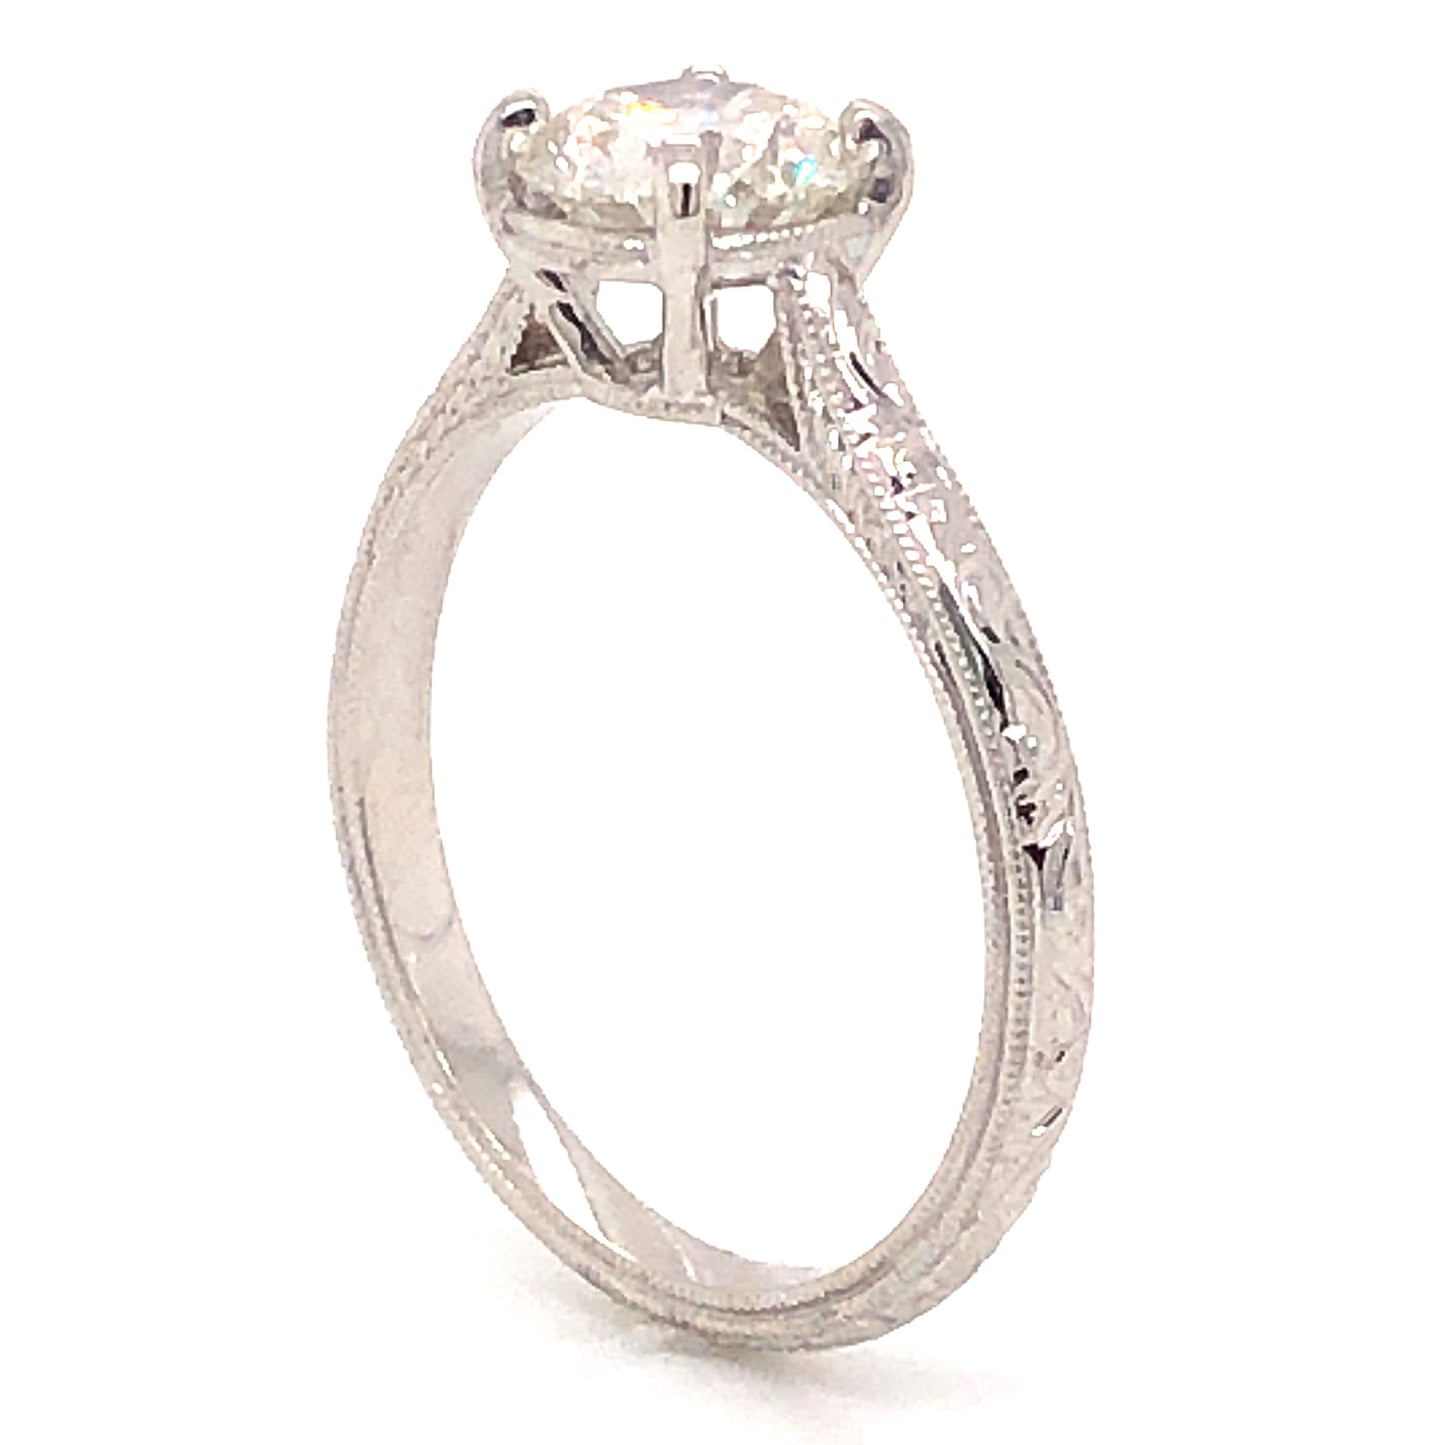 1.04 Art Deco Diamond Engagement Ring in 18K White Gold